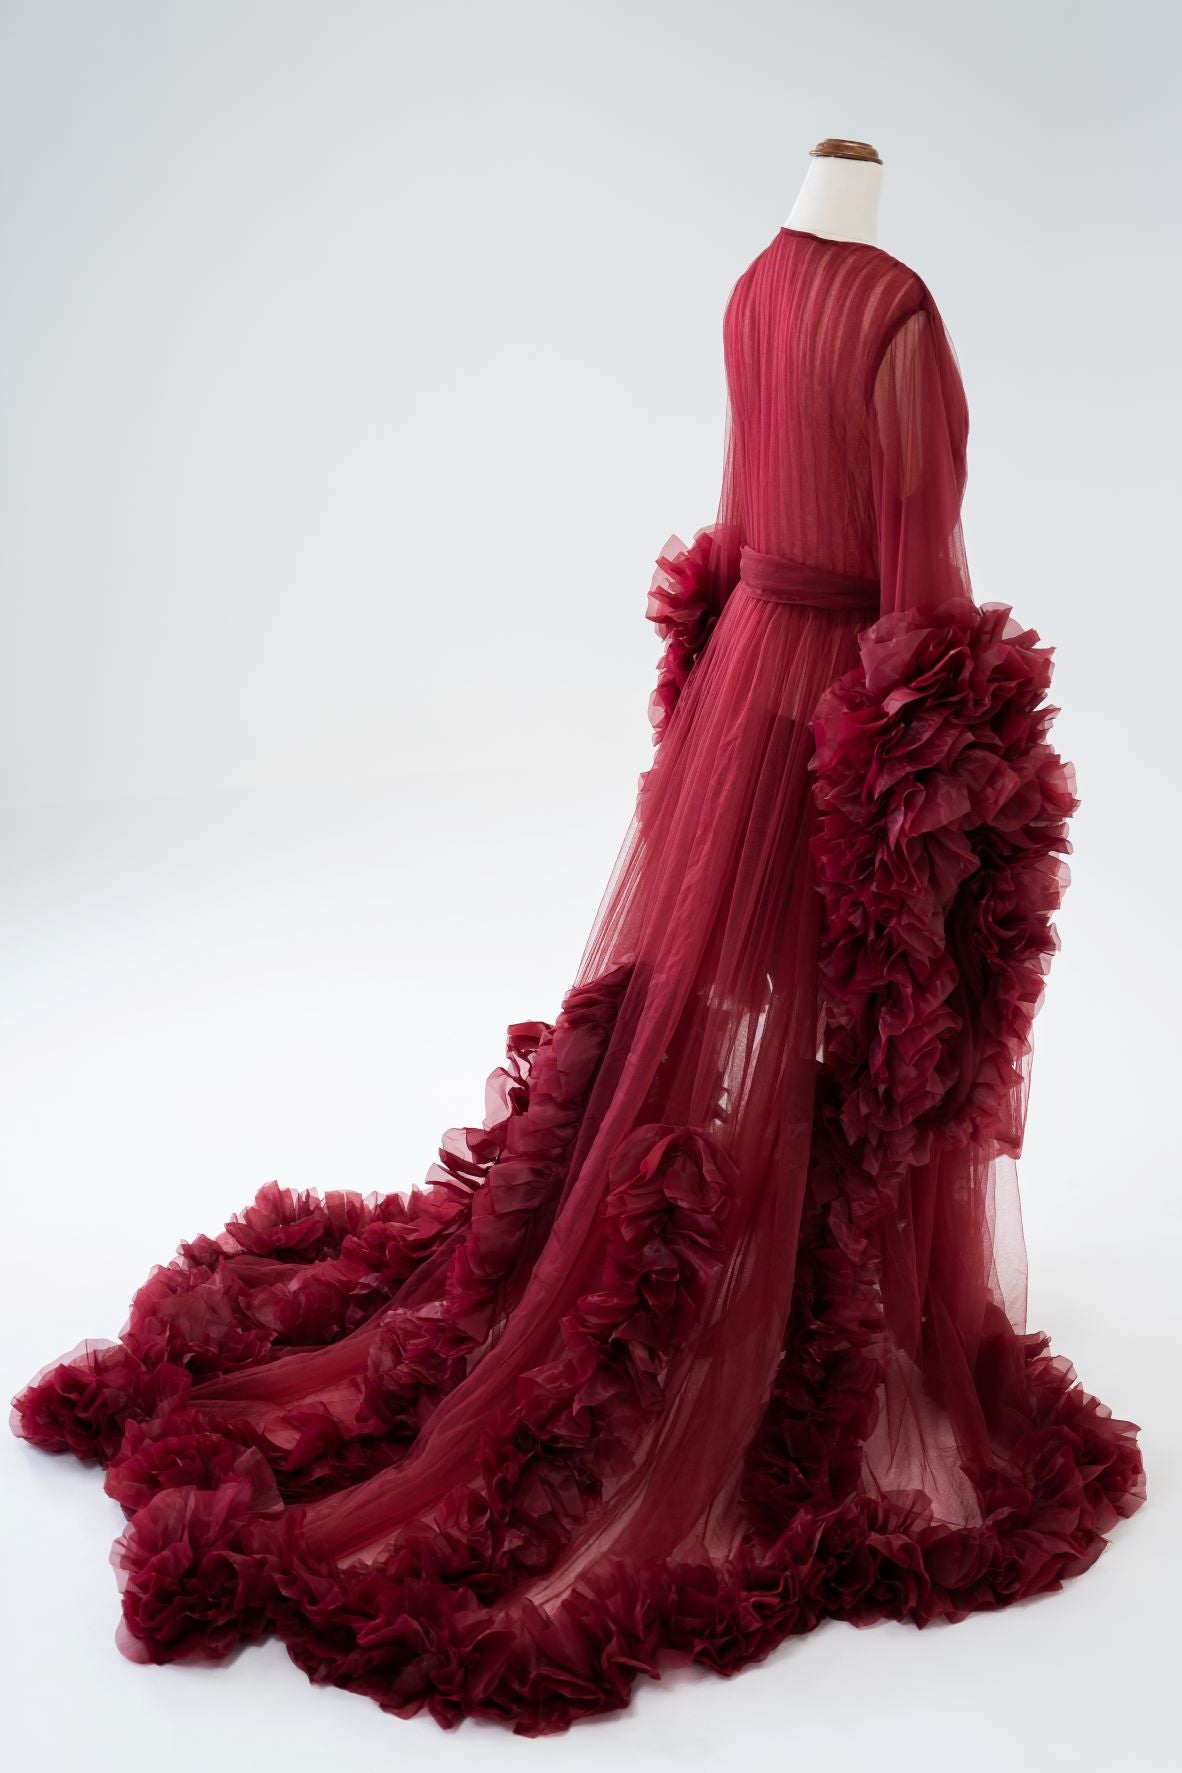 red tulle robe maternity dresses australia